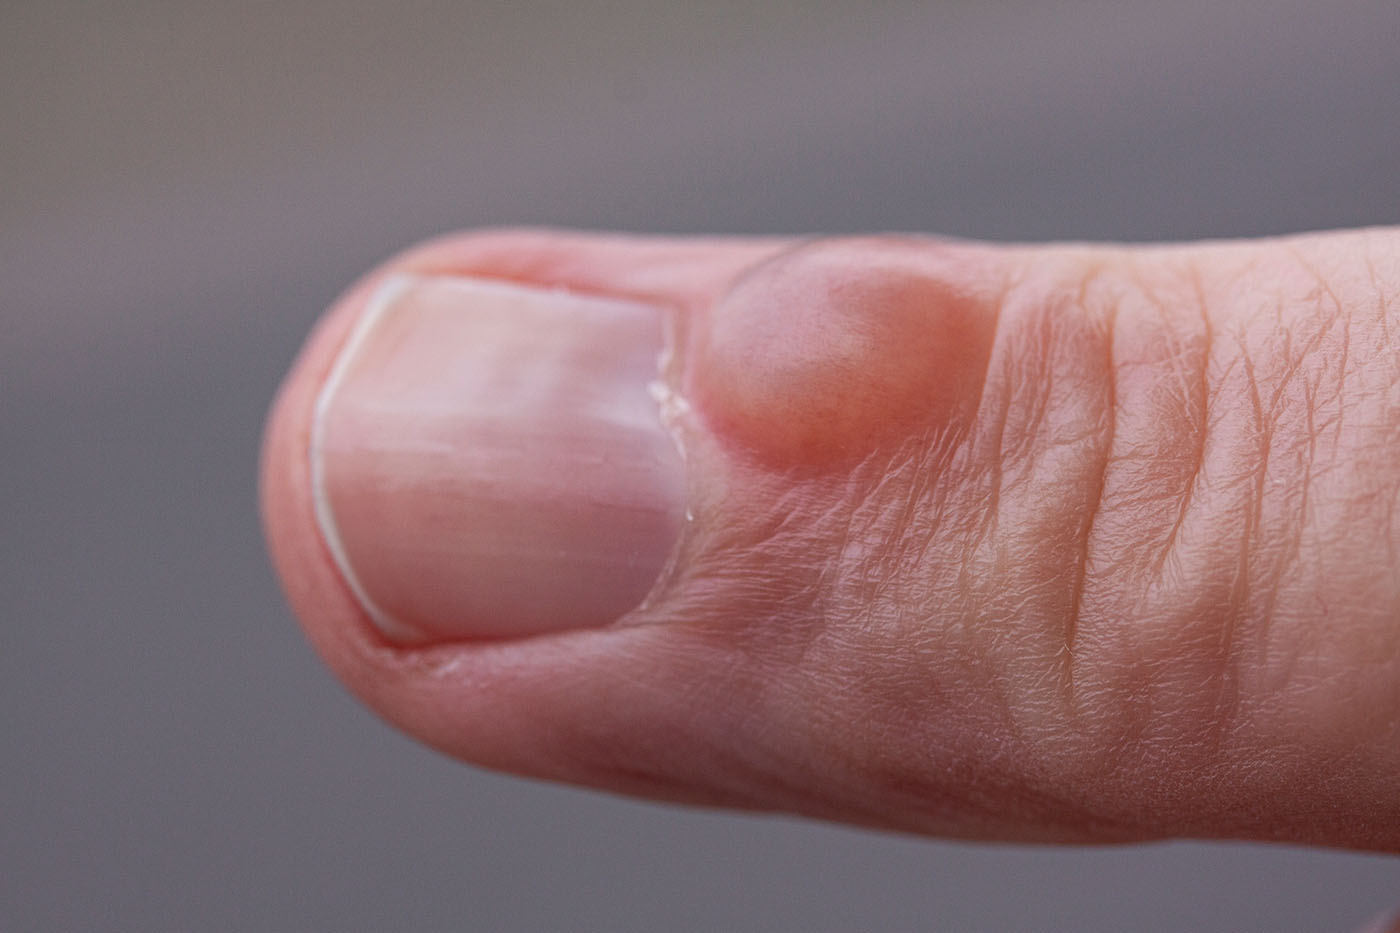 inflamația articulației degetului mare de lângă unghie)